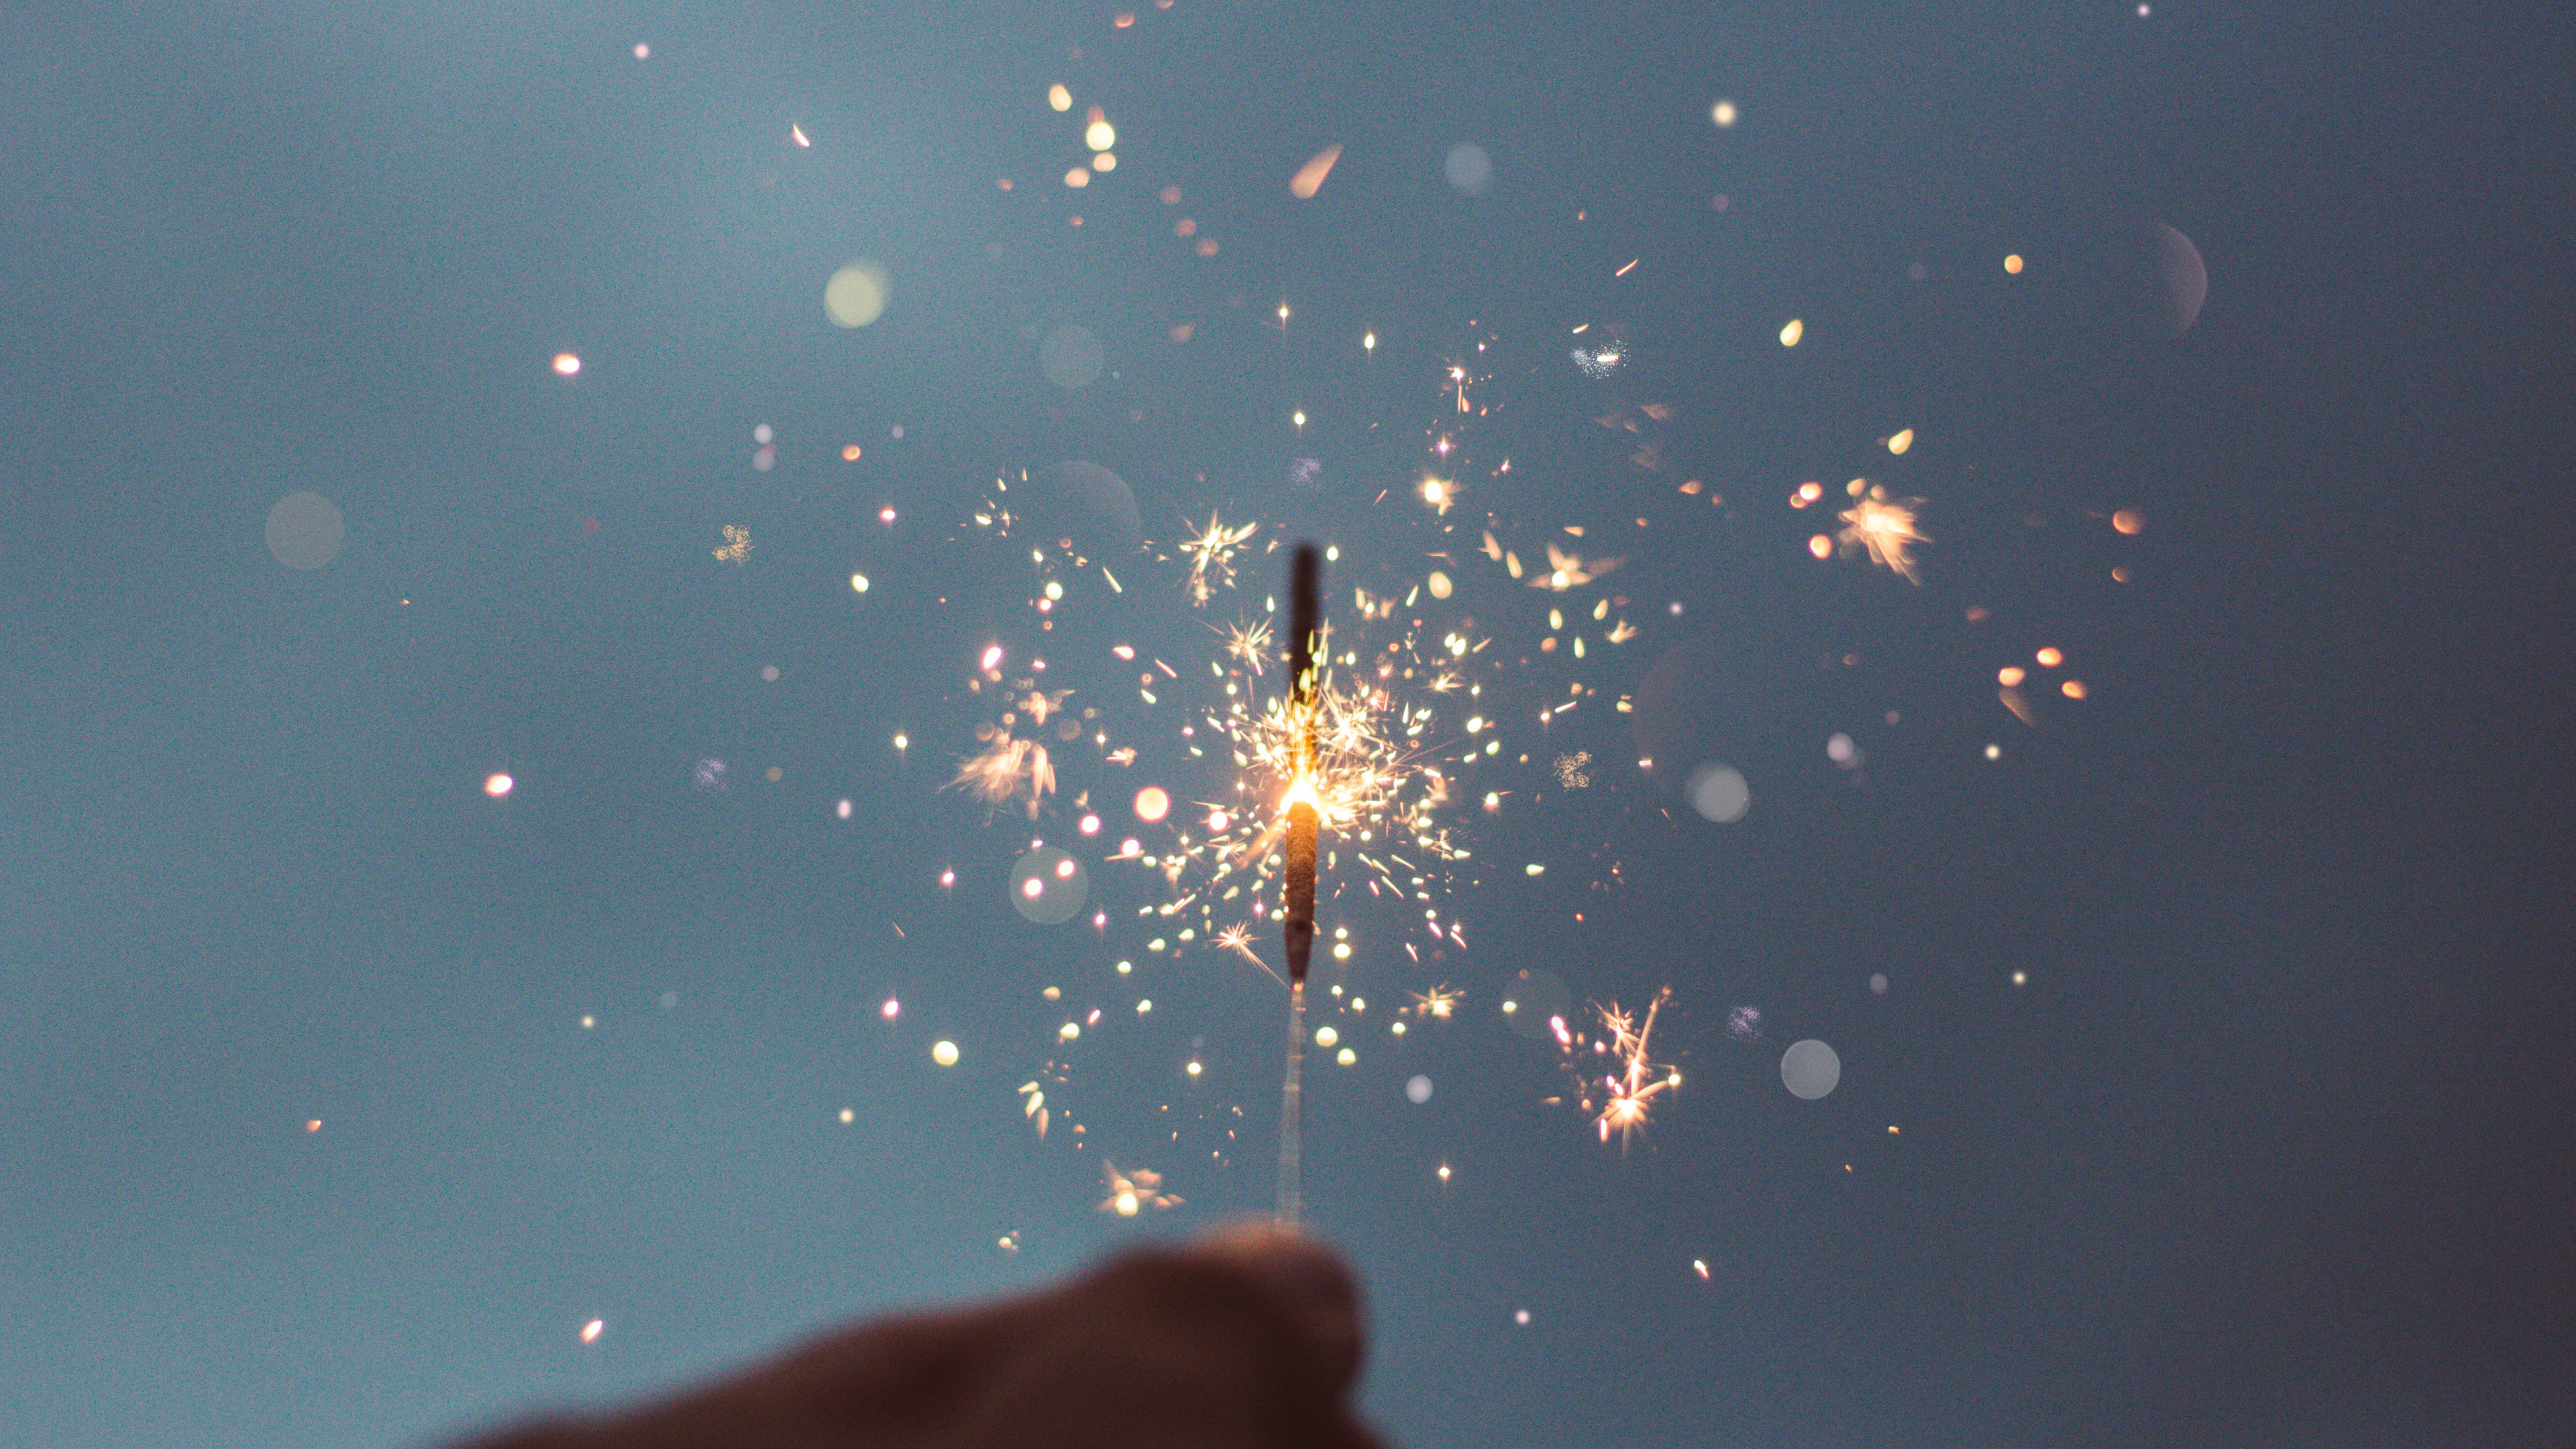 Neujahr, Wasser, Wunderkerze, Feuerwerk, Hand. Wallpaper in 3840x2160 Resolution